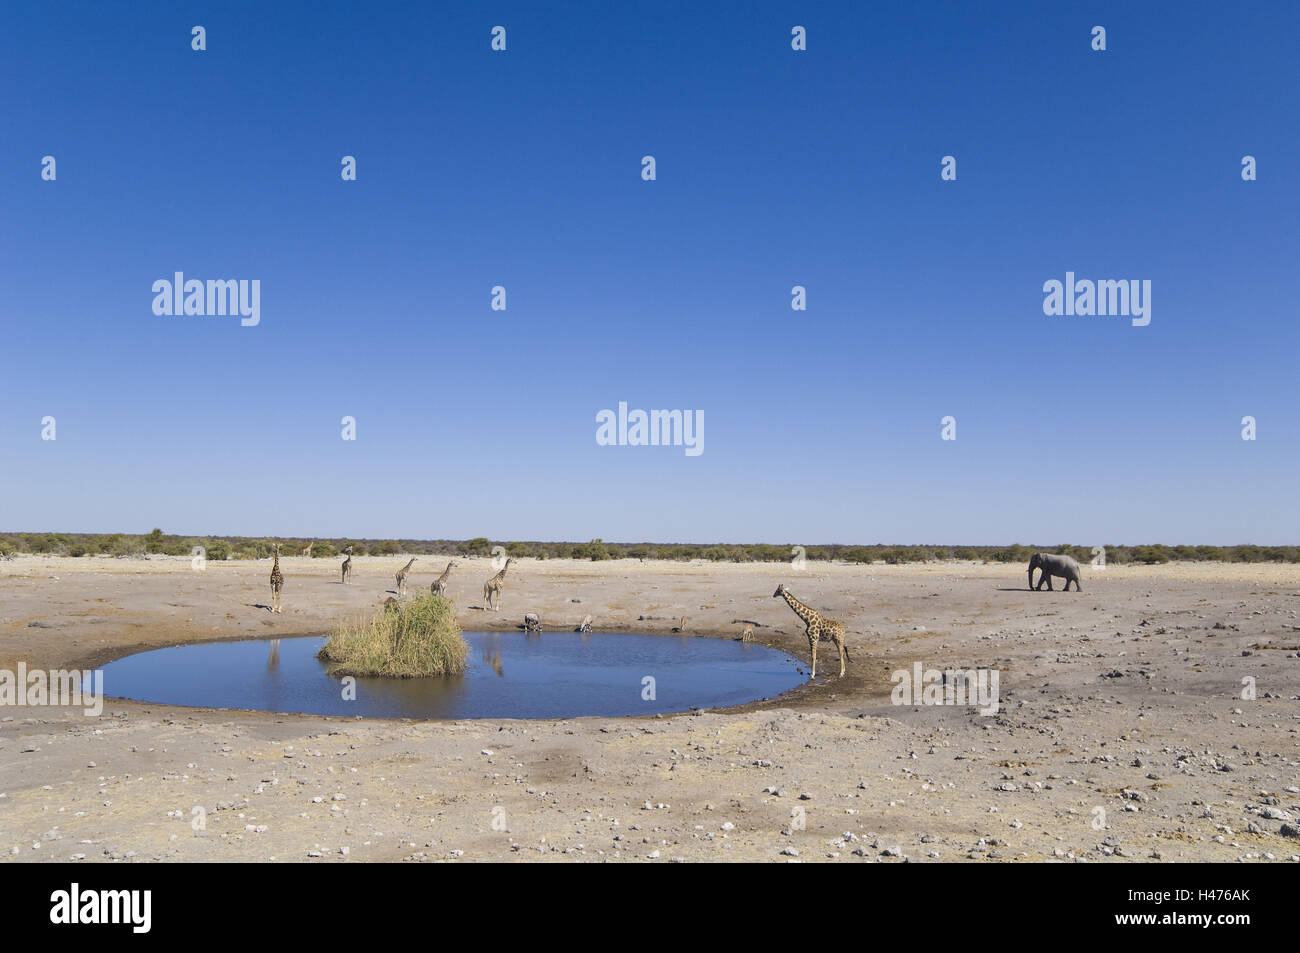 Africa, Namibia, Etosha National Park, water hole, giraffes, elephant, Stock Photo